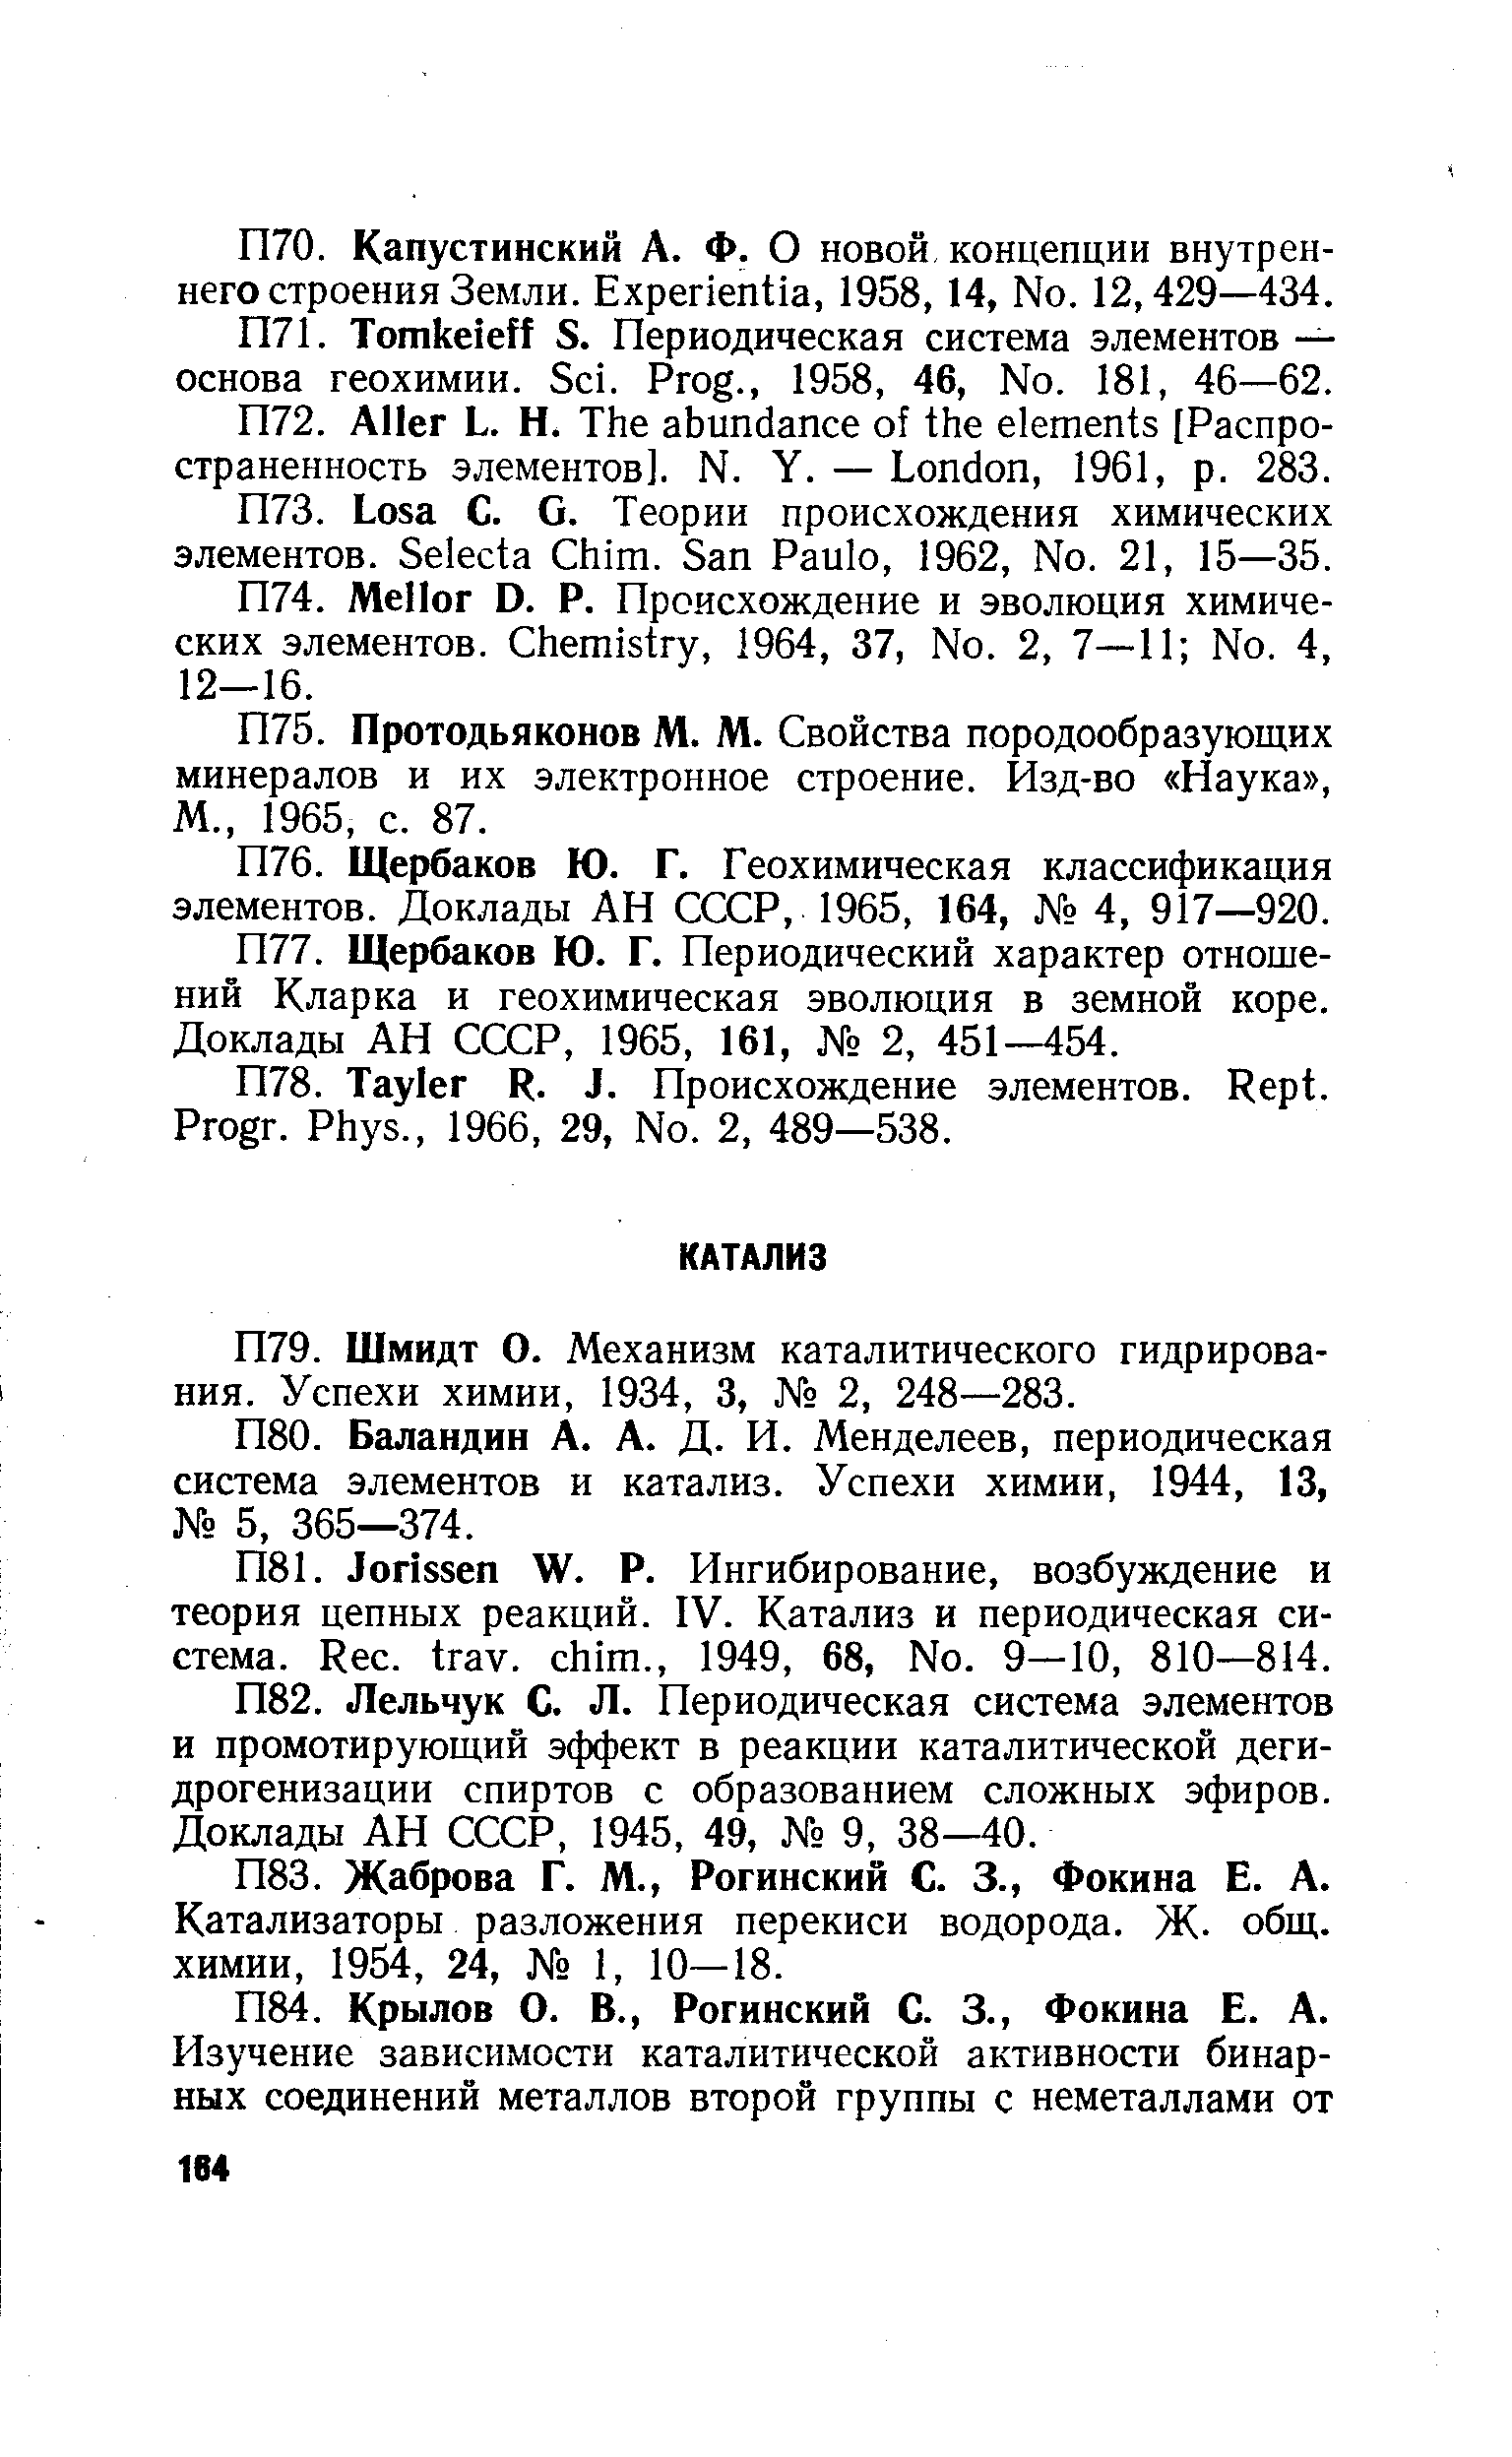 Баландин А. А. Д. И. Менделеев, периодическая система элементов и катализ. Успехи химии, 1944, 13, 5, 365—374.